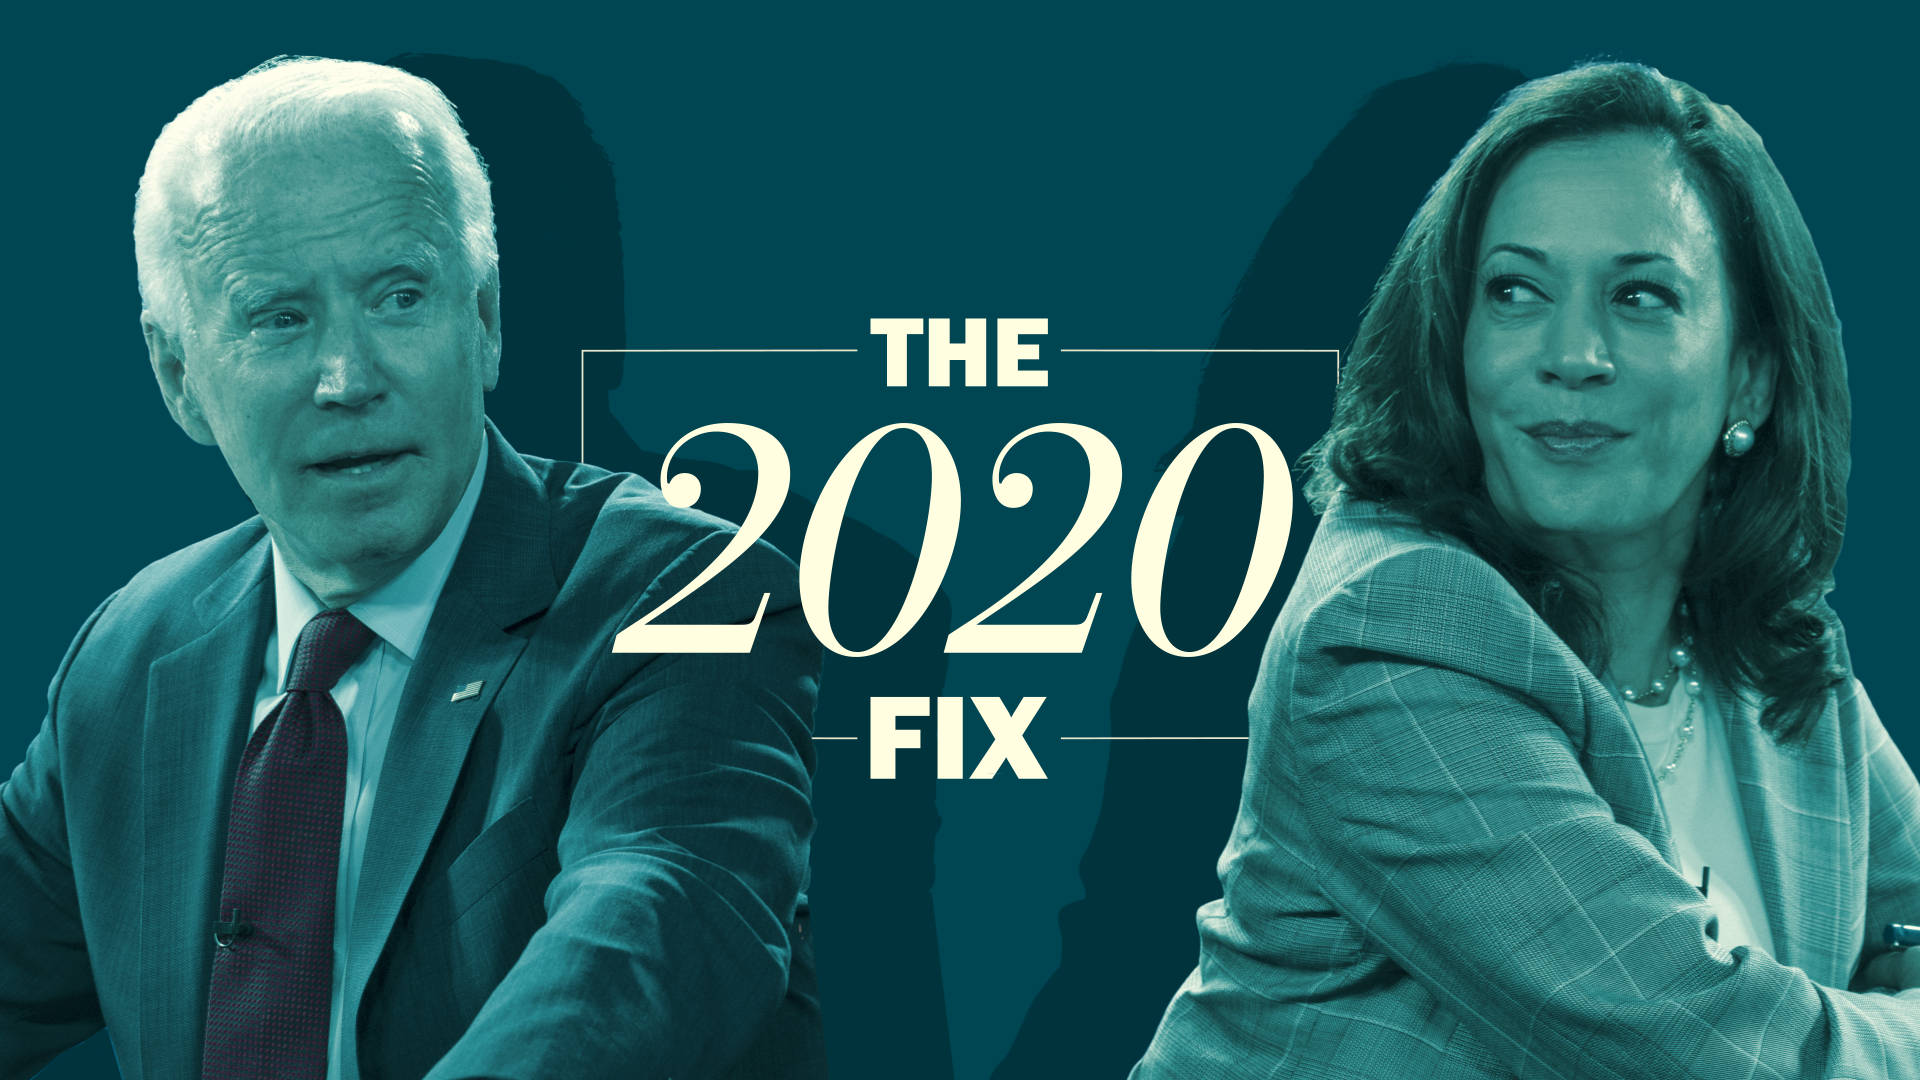 Joe Biden And Harris In The 2020 Fix